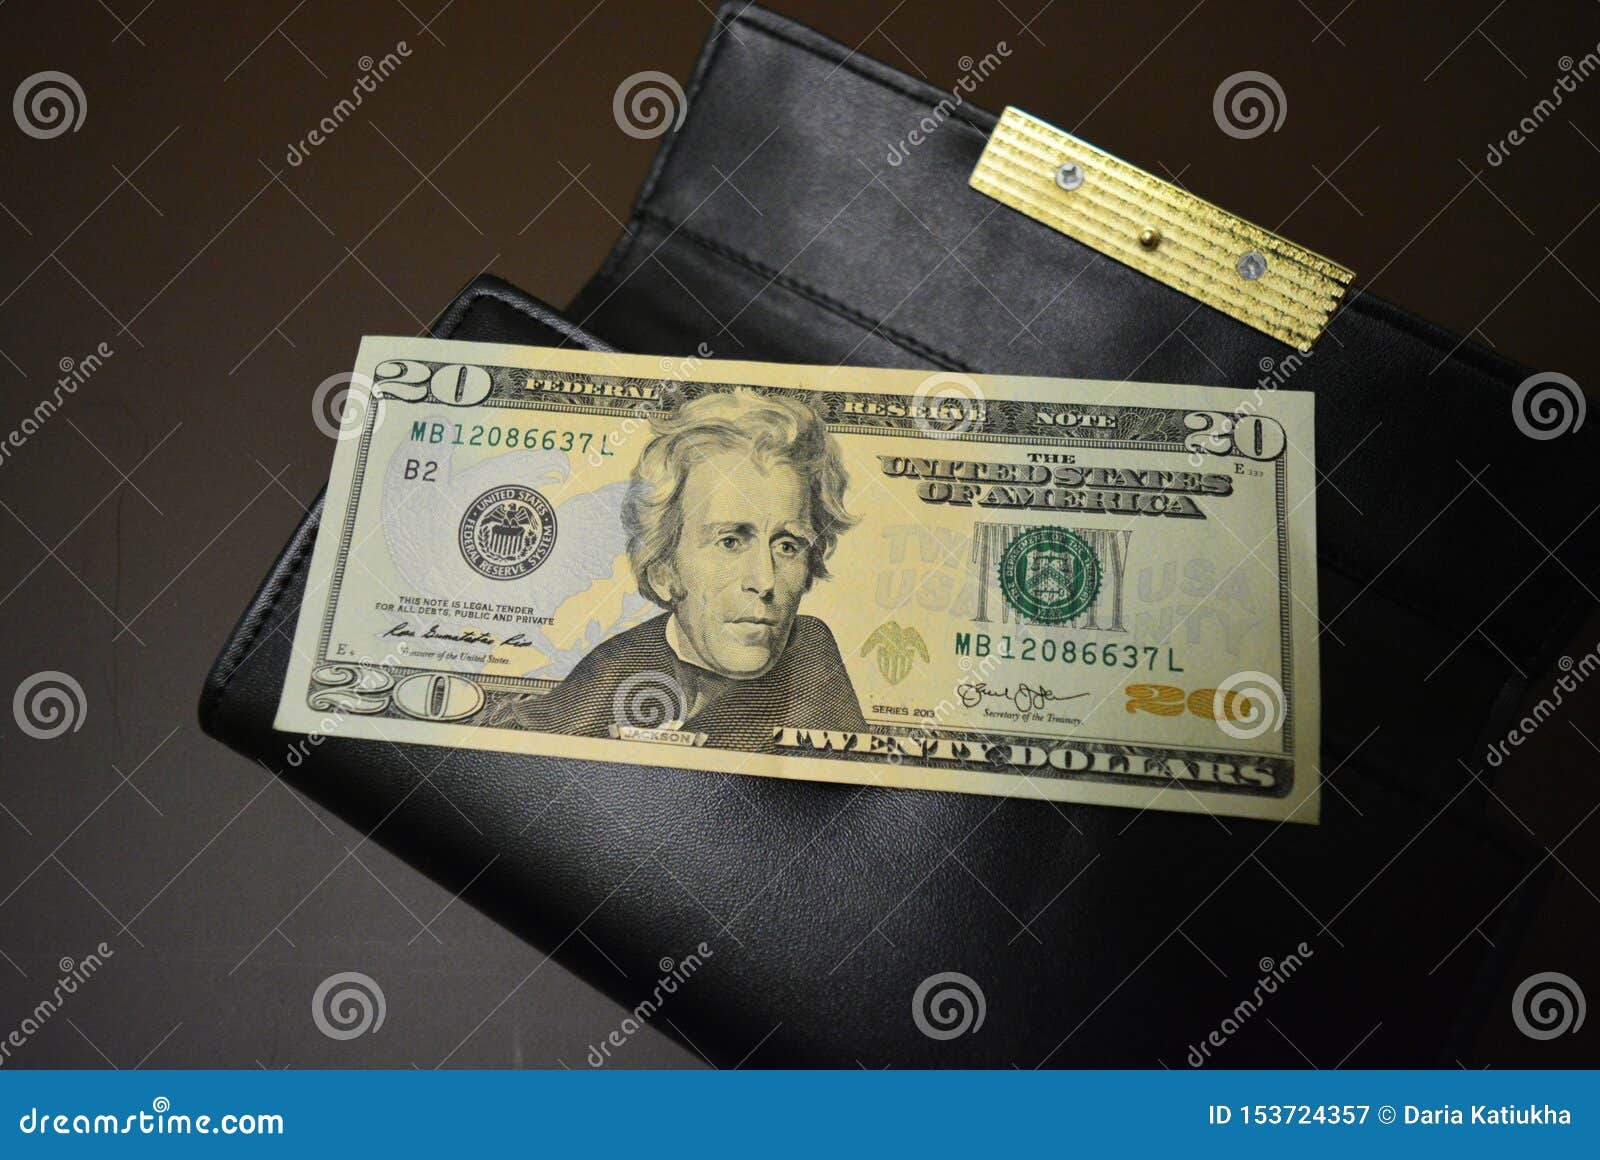 Hãy nhìn vào hình ảnh của tờ tiền 20 đô la này để cảm nhận sự cao quý và đẳng cấp của nó. Có lẽ không có gì thể hiện sự ấn tượng hơn là một tờ tiền 20 đô la, với thiết kế tinh xảo và màu sắc đặc trưng.